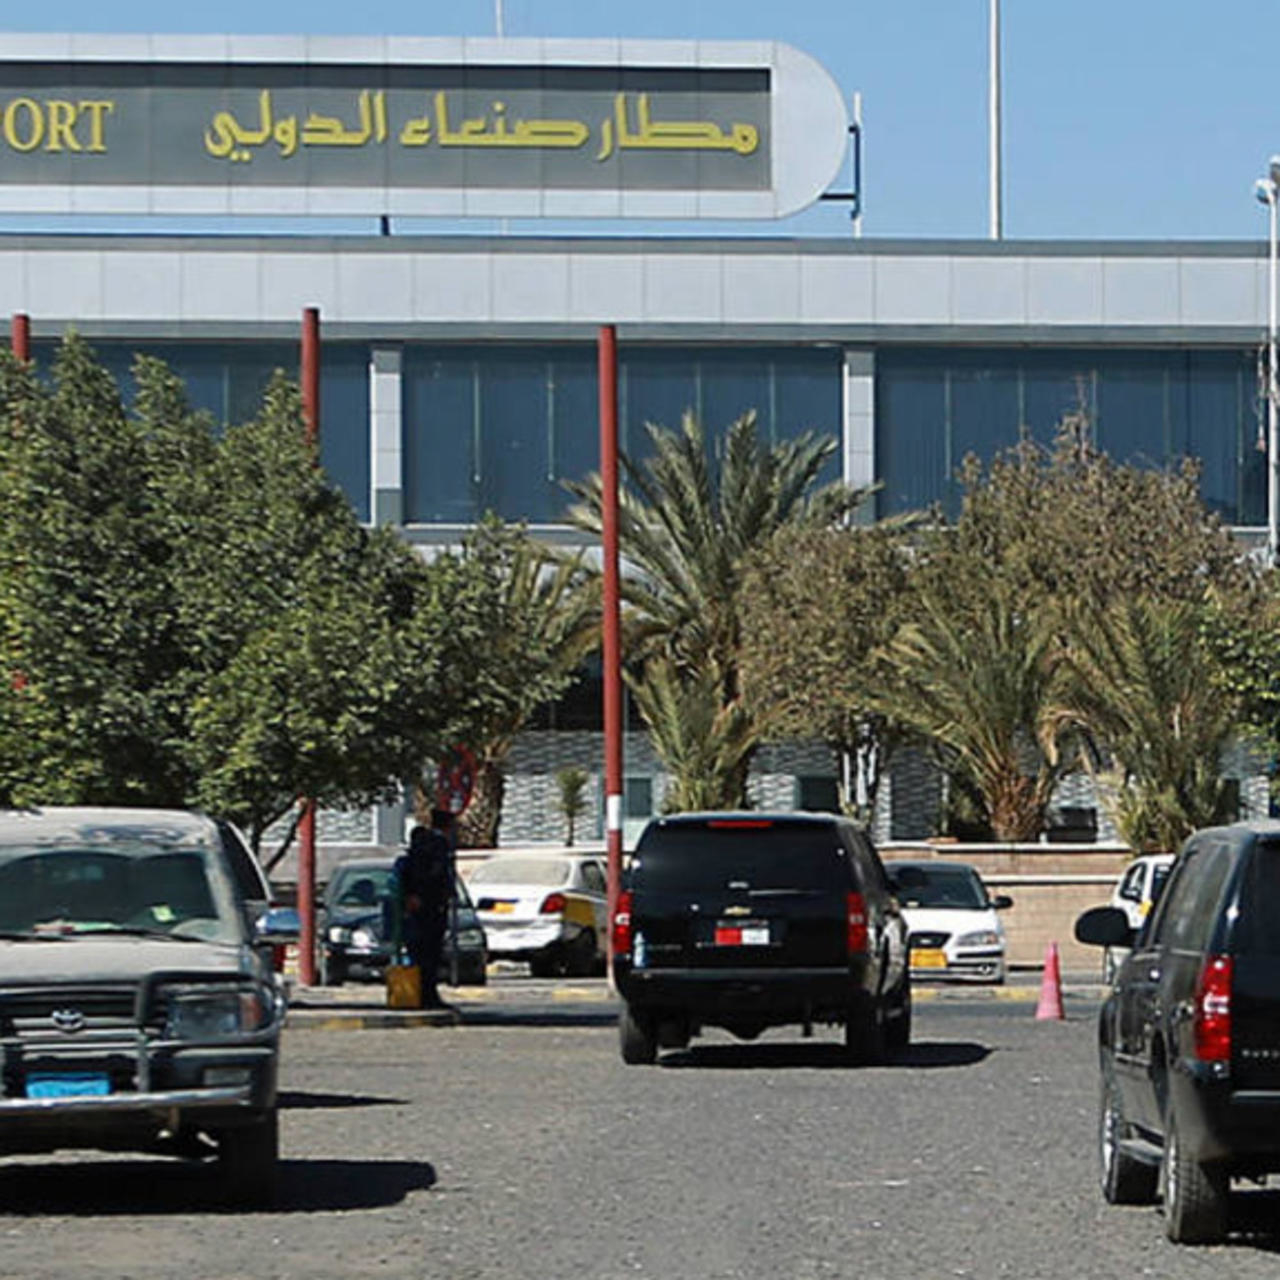 بعد اكتمال وصول ما تحتاجه.. ميليشيا الحوثي الإيرانية تغلق مطار صنعاء الدولي في وجه الأمم المتحدة!